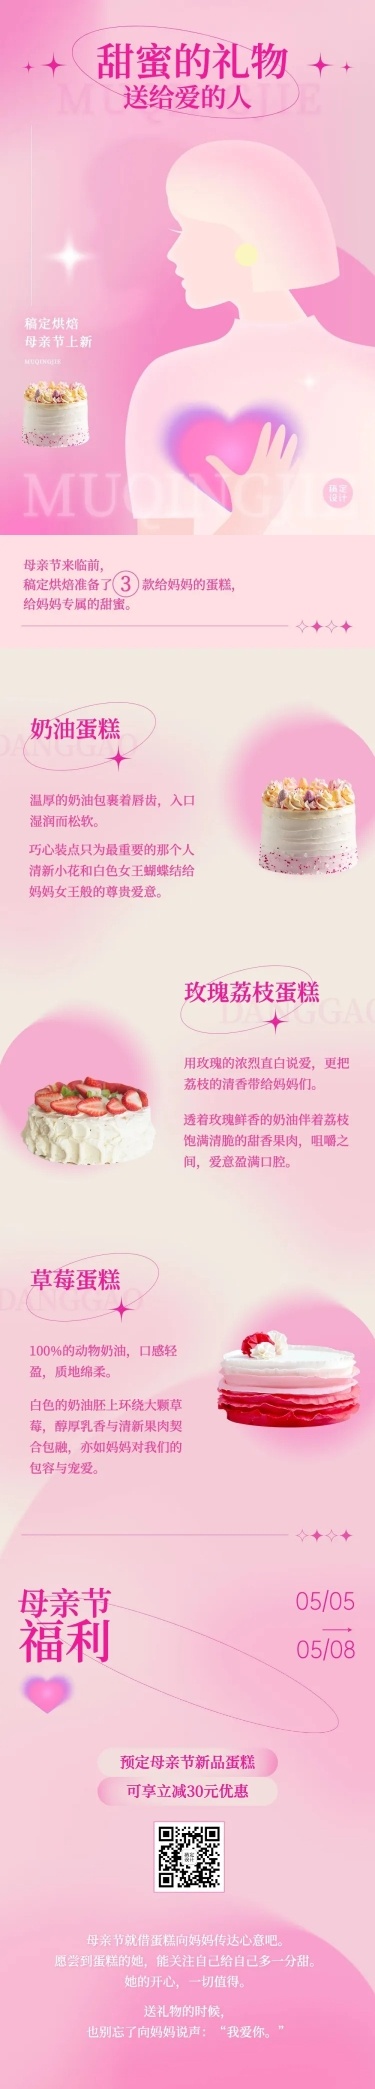 创意手绘风母亲节餐饮蛋糕烘焙产品营销文章长图